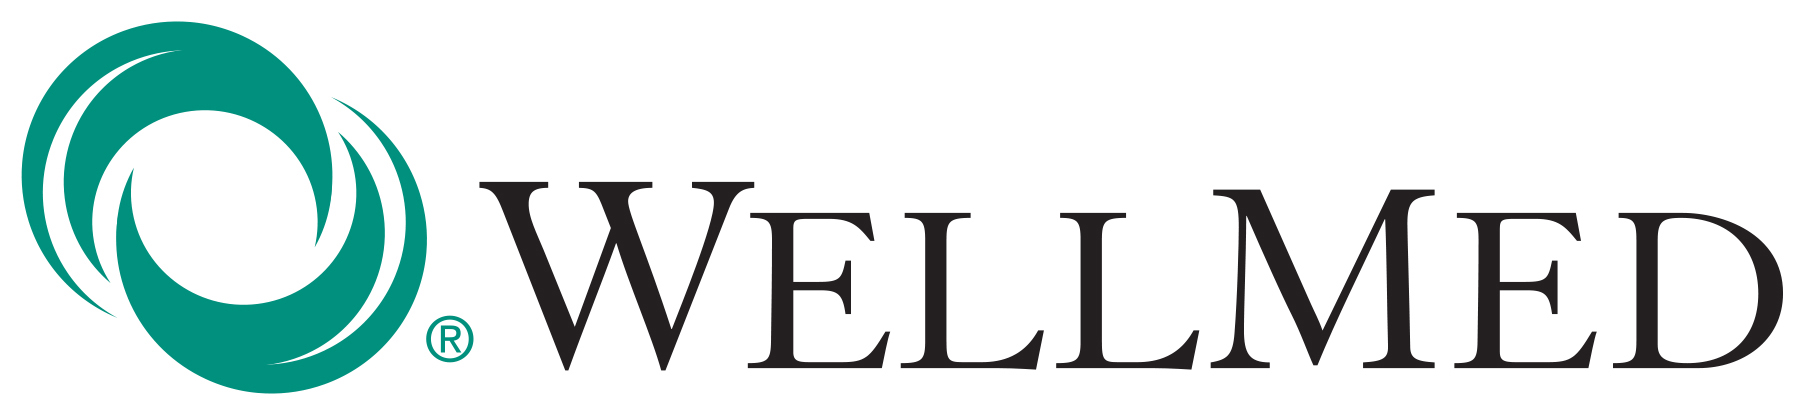 WellMed-Horz_no tagline_COLOR logo